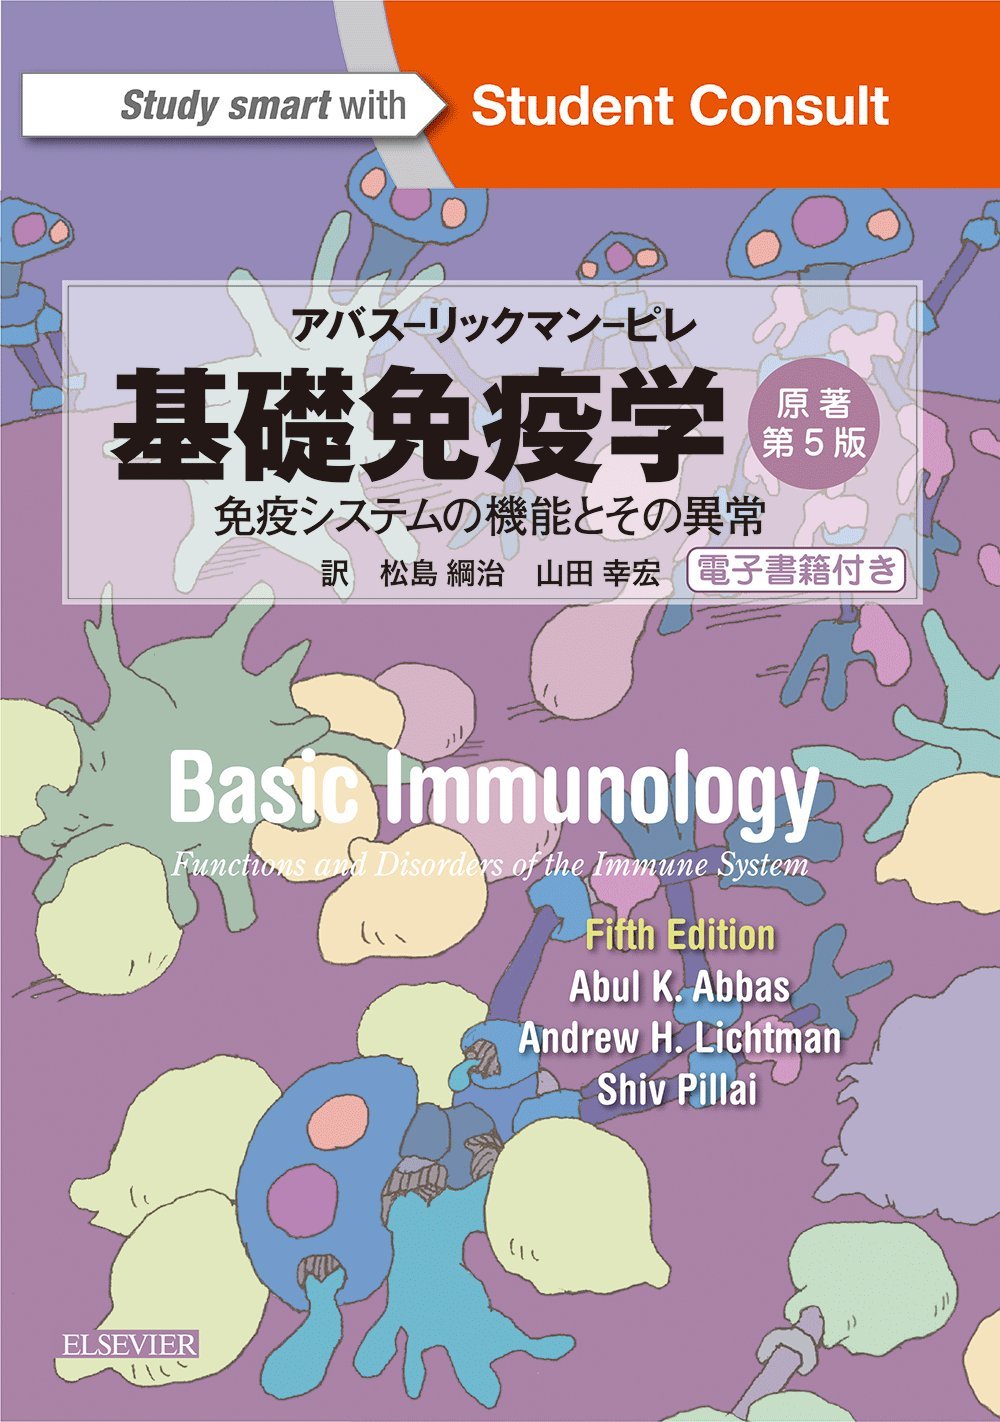 基礎免疫学 原著第5版 電子書籍(日本語・英語版)付 | 和書 